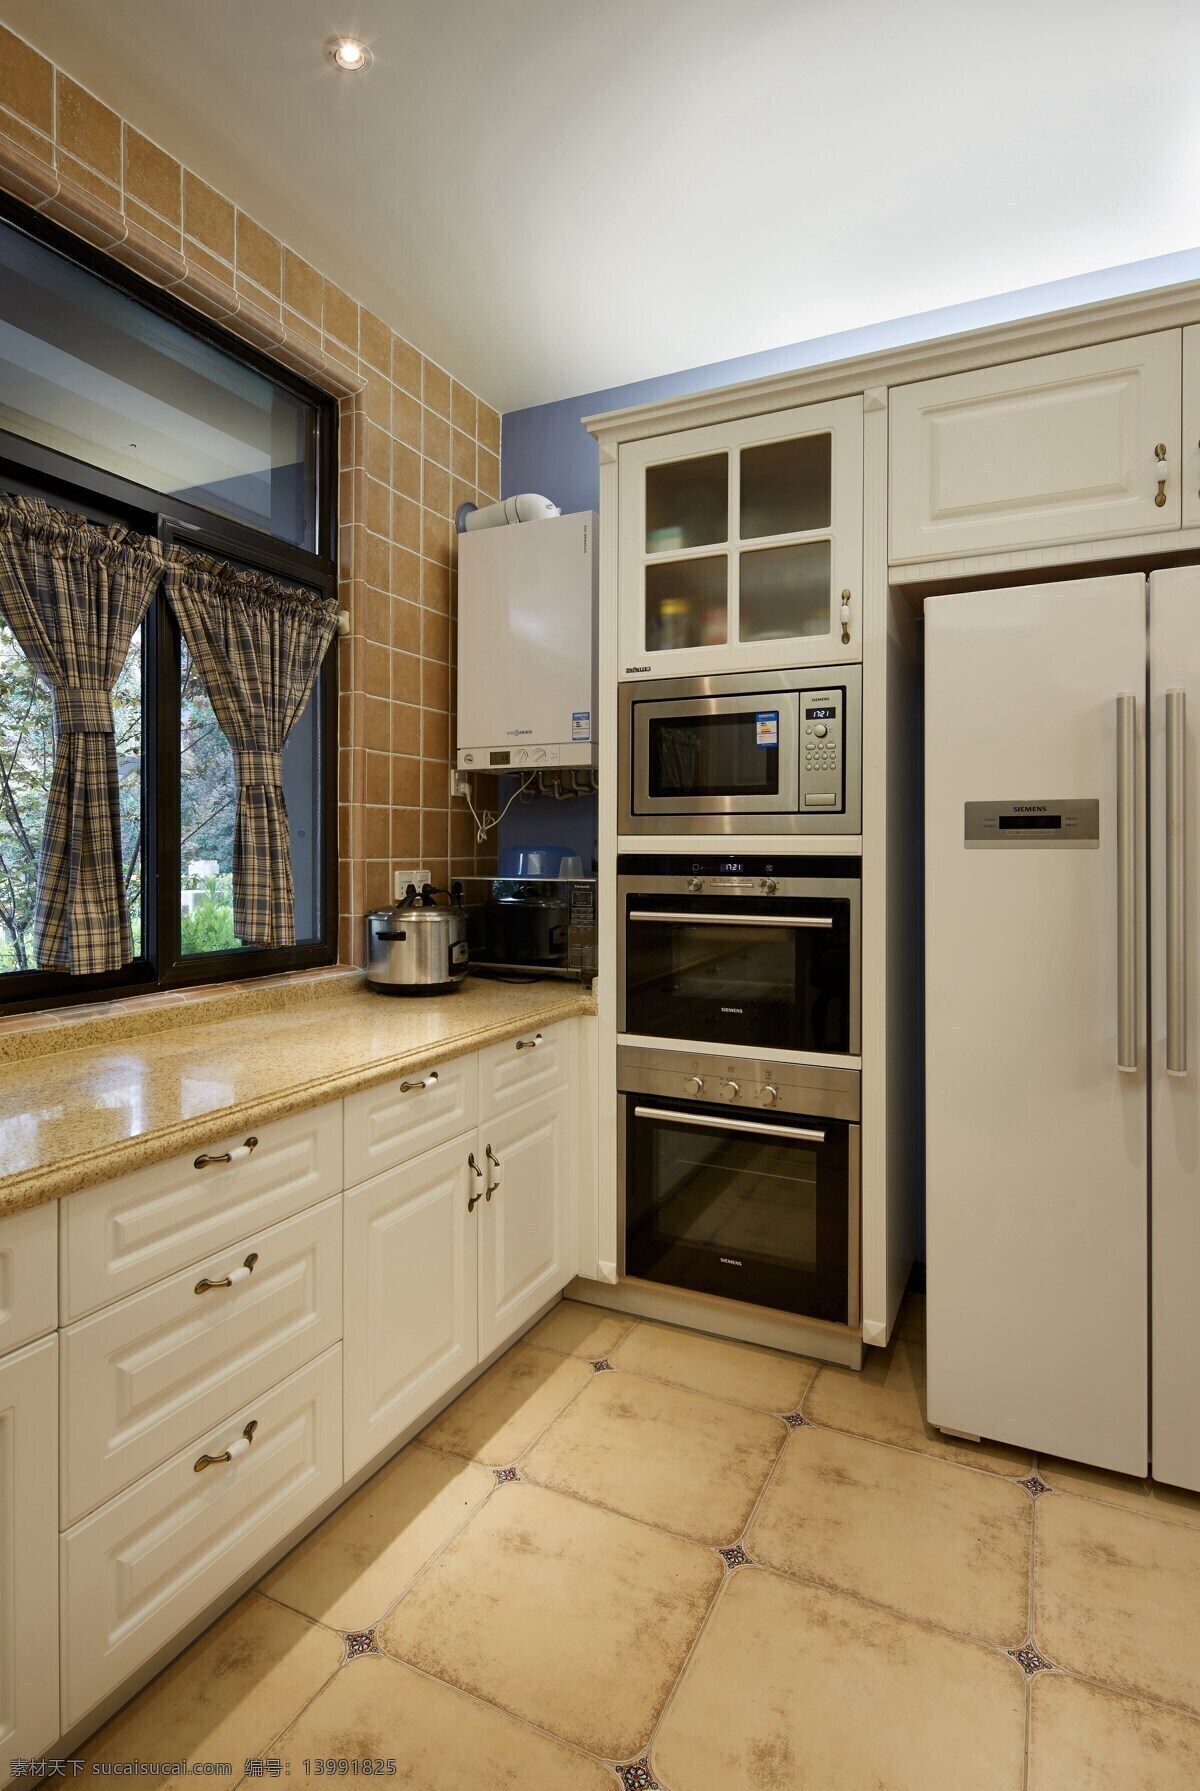 小 户型 欧式 温馨 复古 厨房 装修 效果图 小户型 经典 怀旧